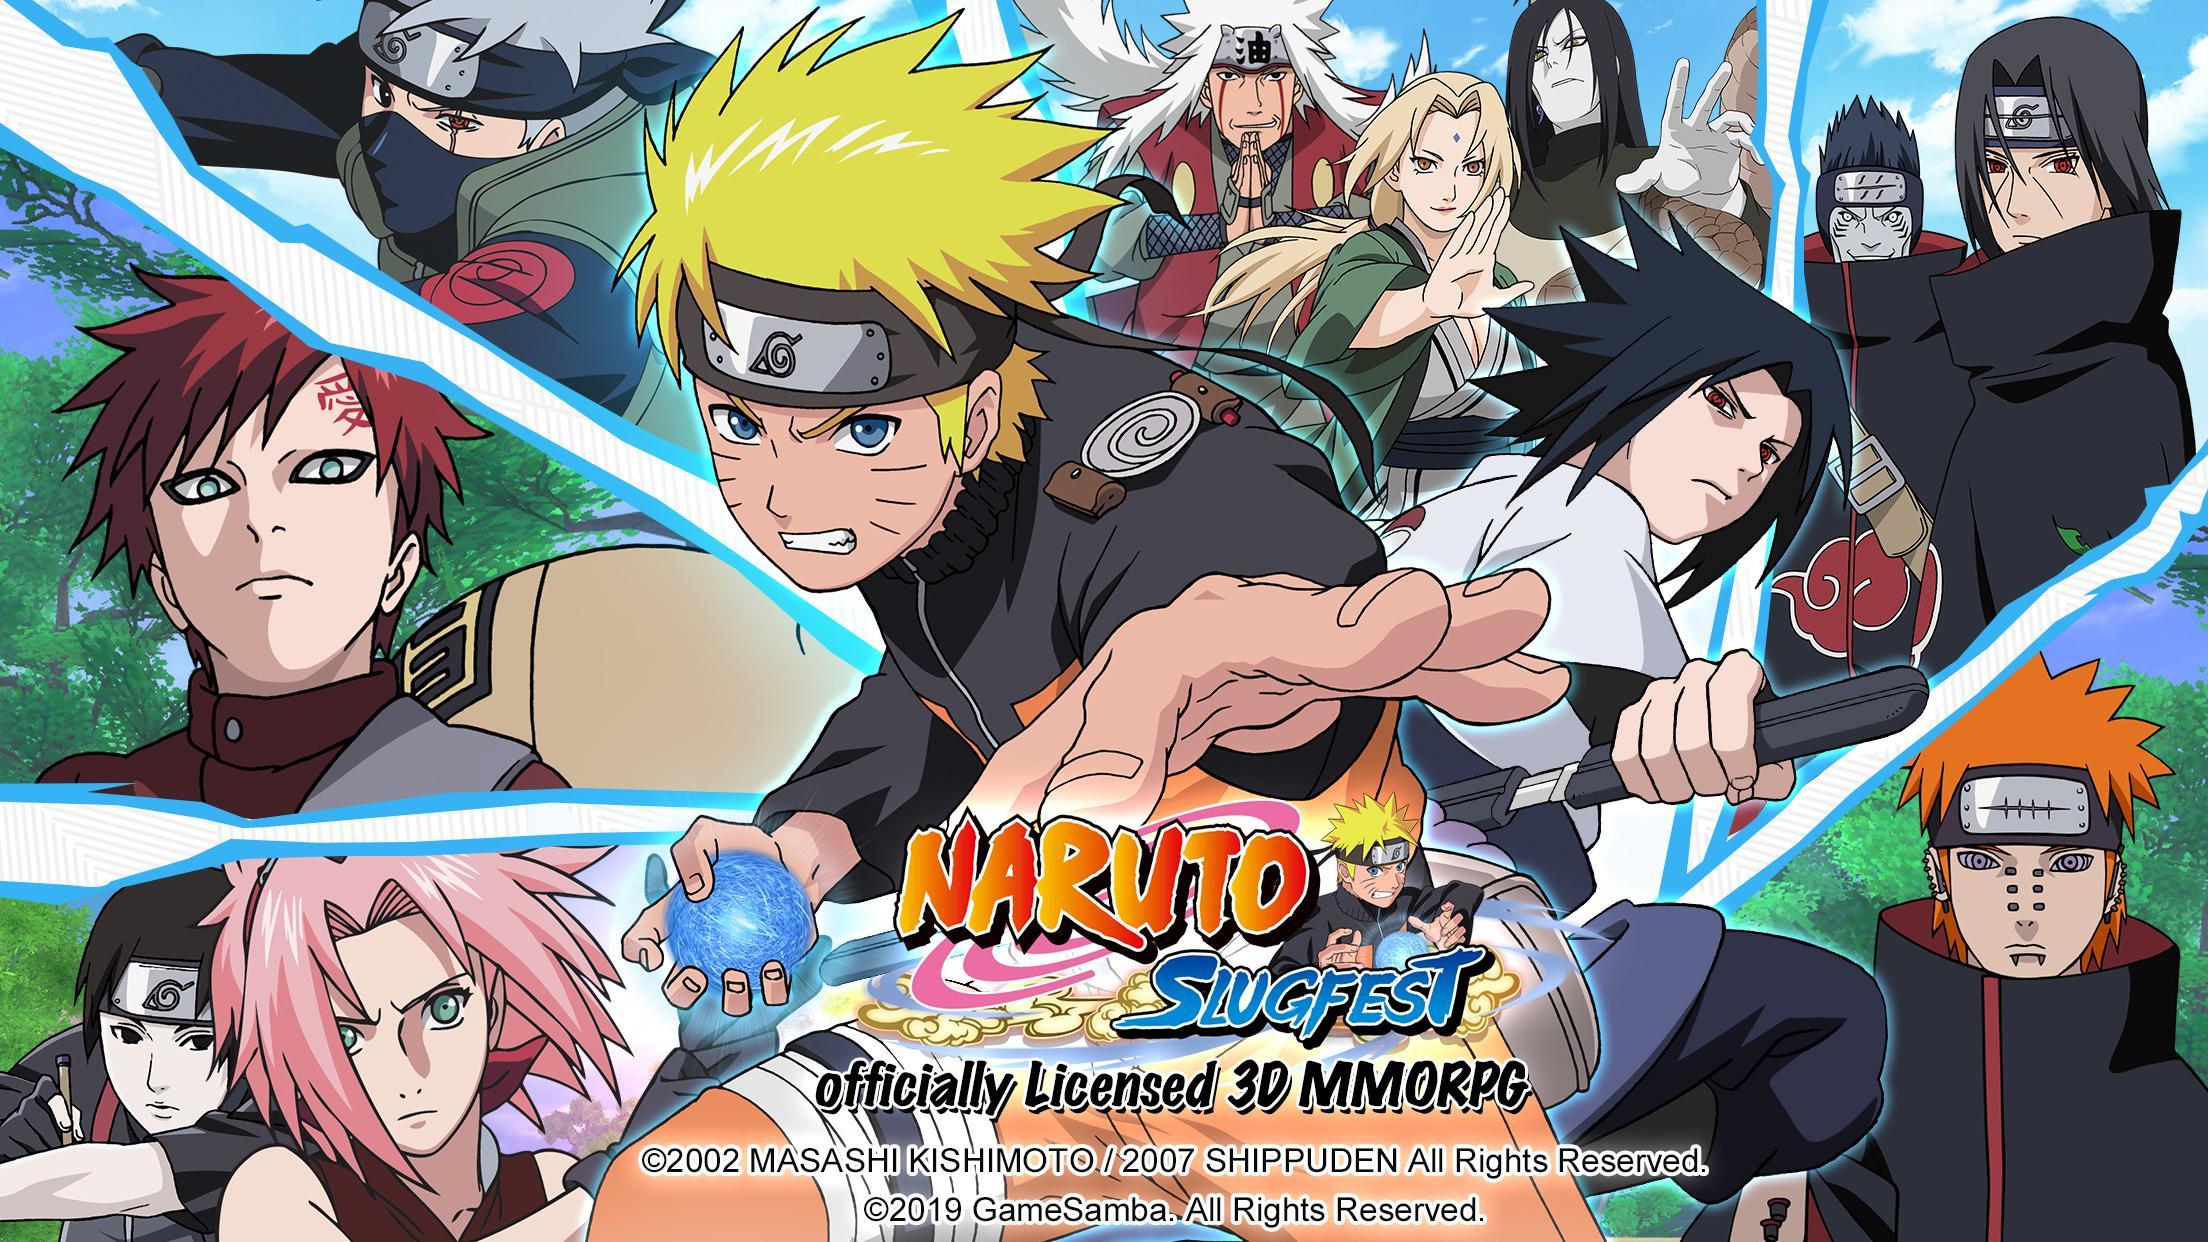 Naruto Online: Mobile-Version für Android und iOS